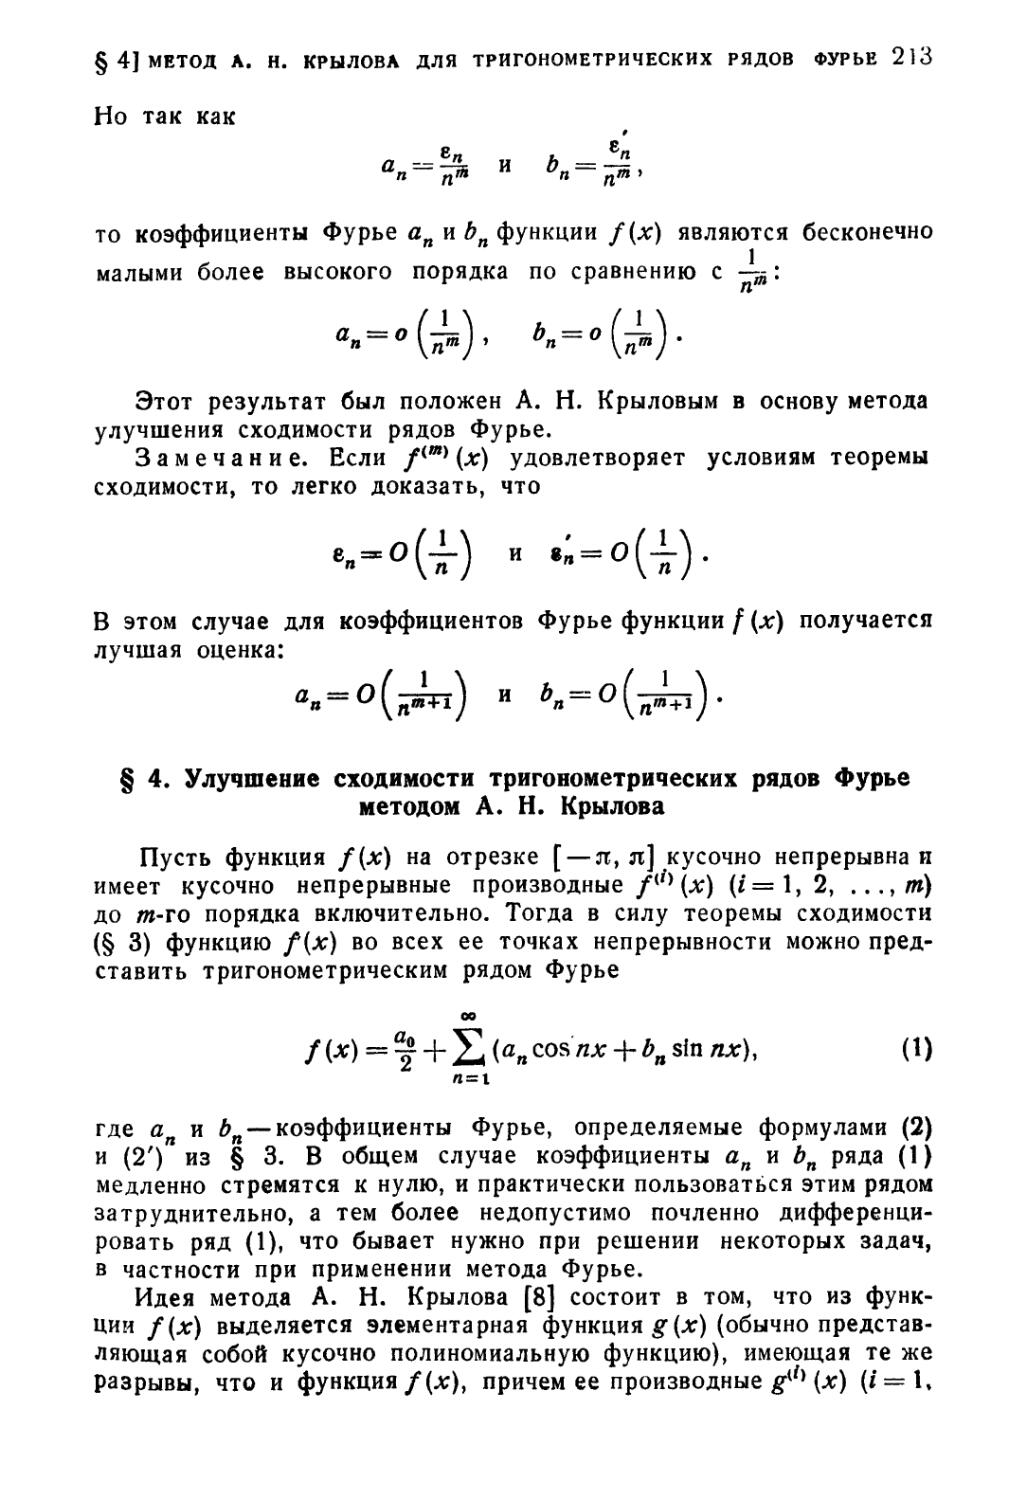 § 4. Улучшение сходимости тригонометрических рядов Фурье методом А.Н. Крылова